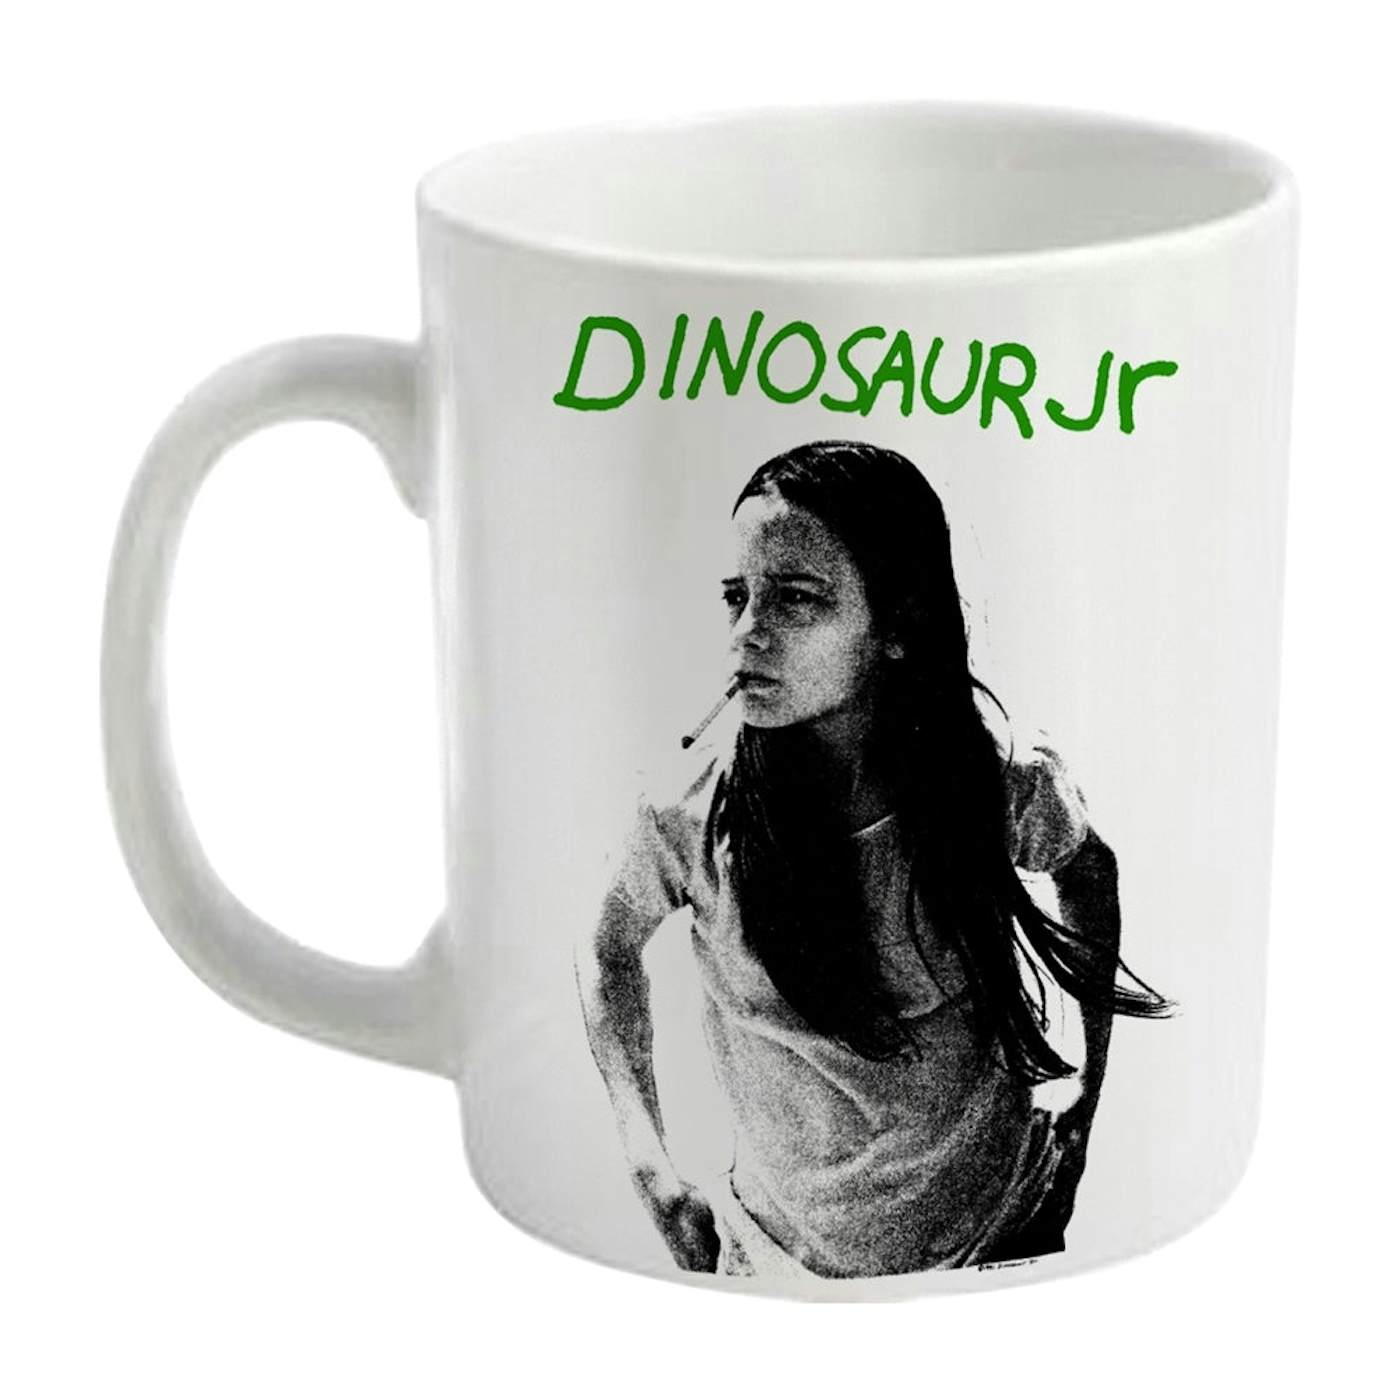 Dinosaur Jr. Mug - Green Mind